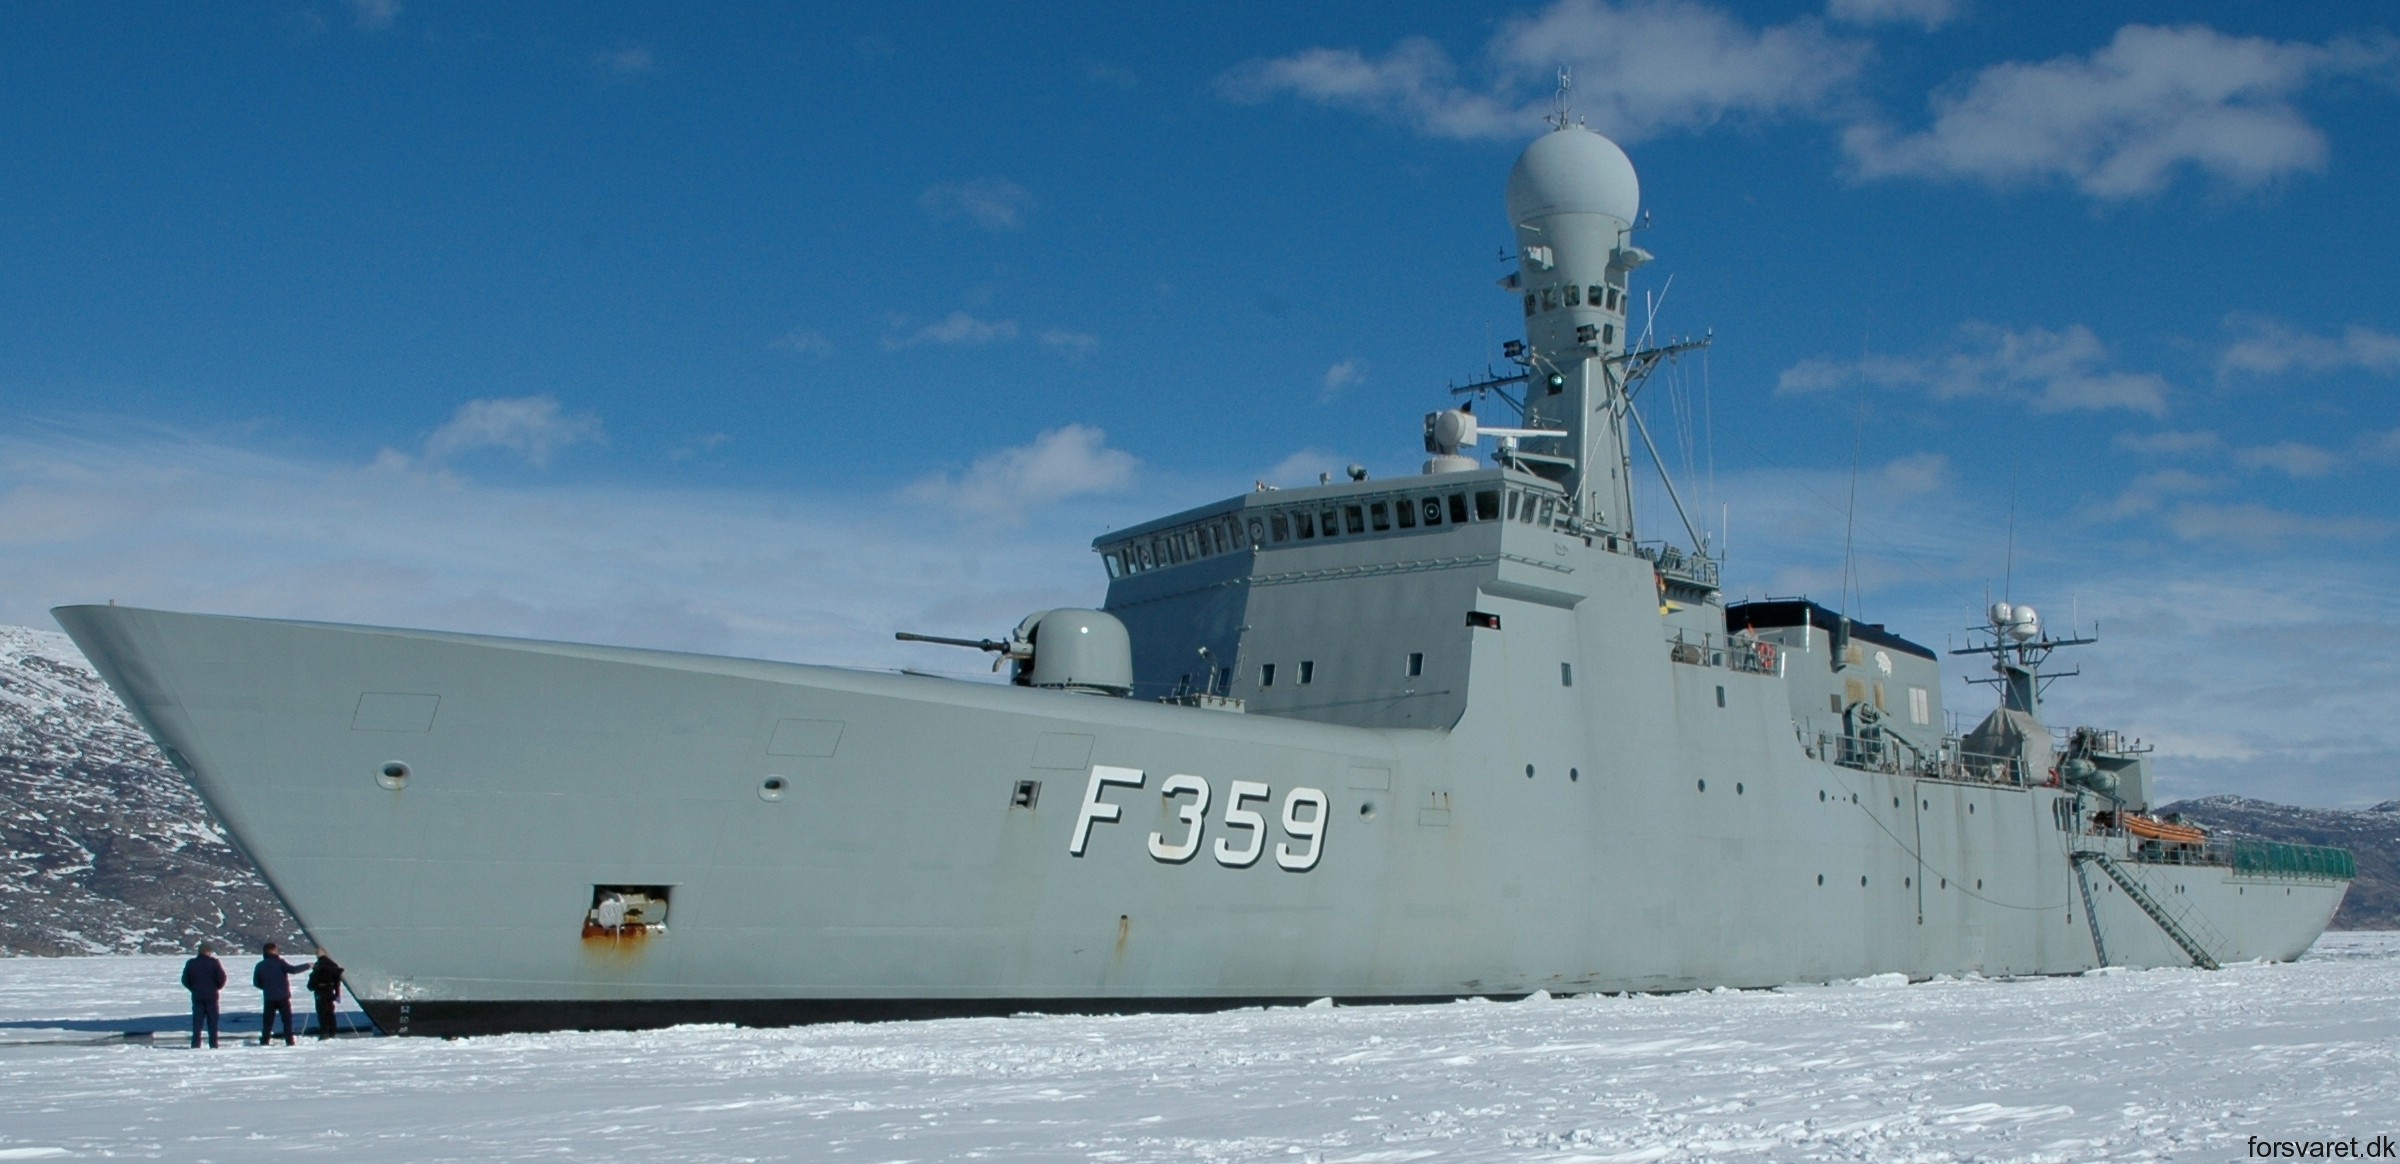 f-359 hdms vaedderen thetis class ocean patrol frigate royal danish navy kongelige danske marine kdm inspektionsskibet 35